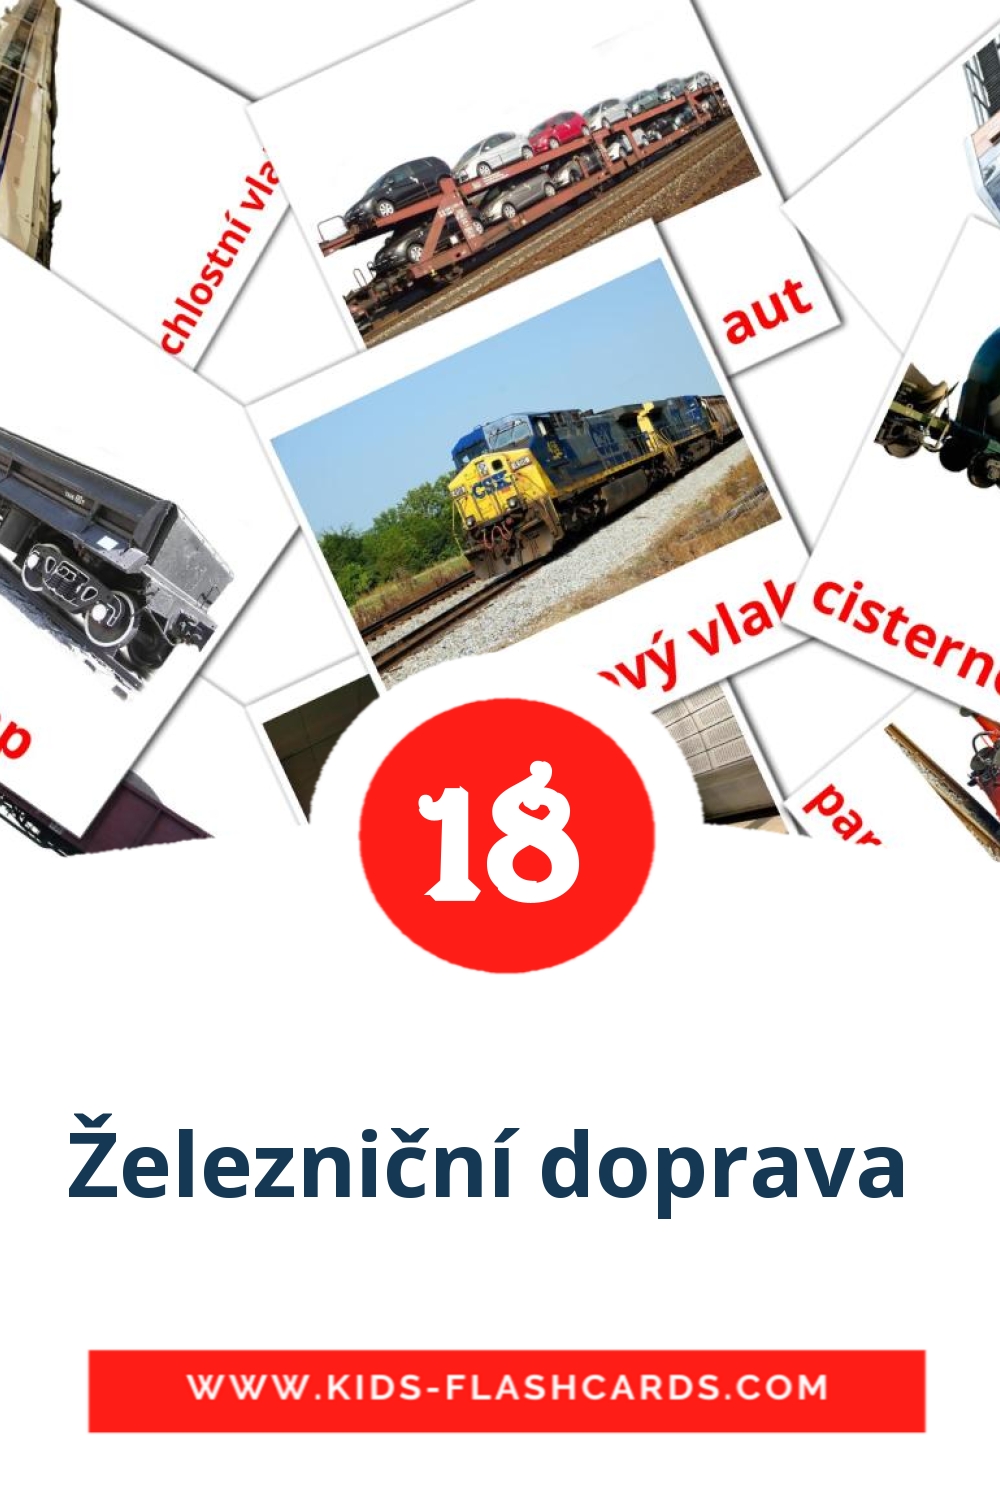 18 tarjetas didacticas de Železniční doprava  para el jardín de infancia en checo